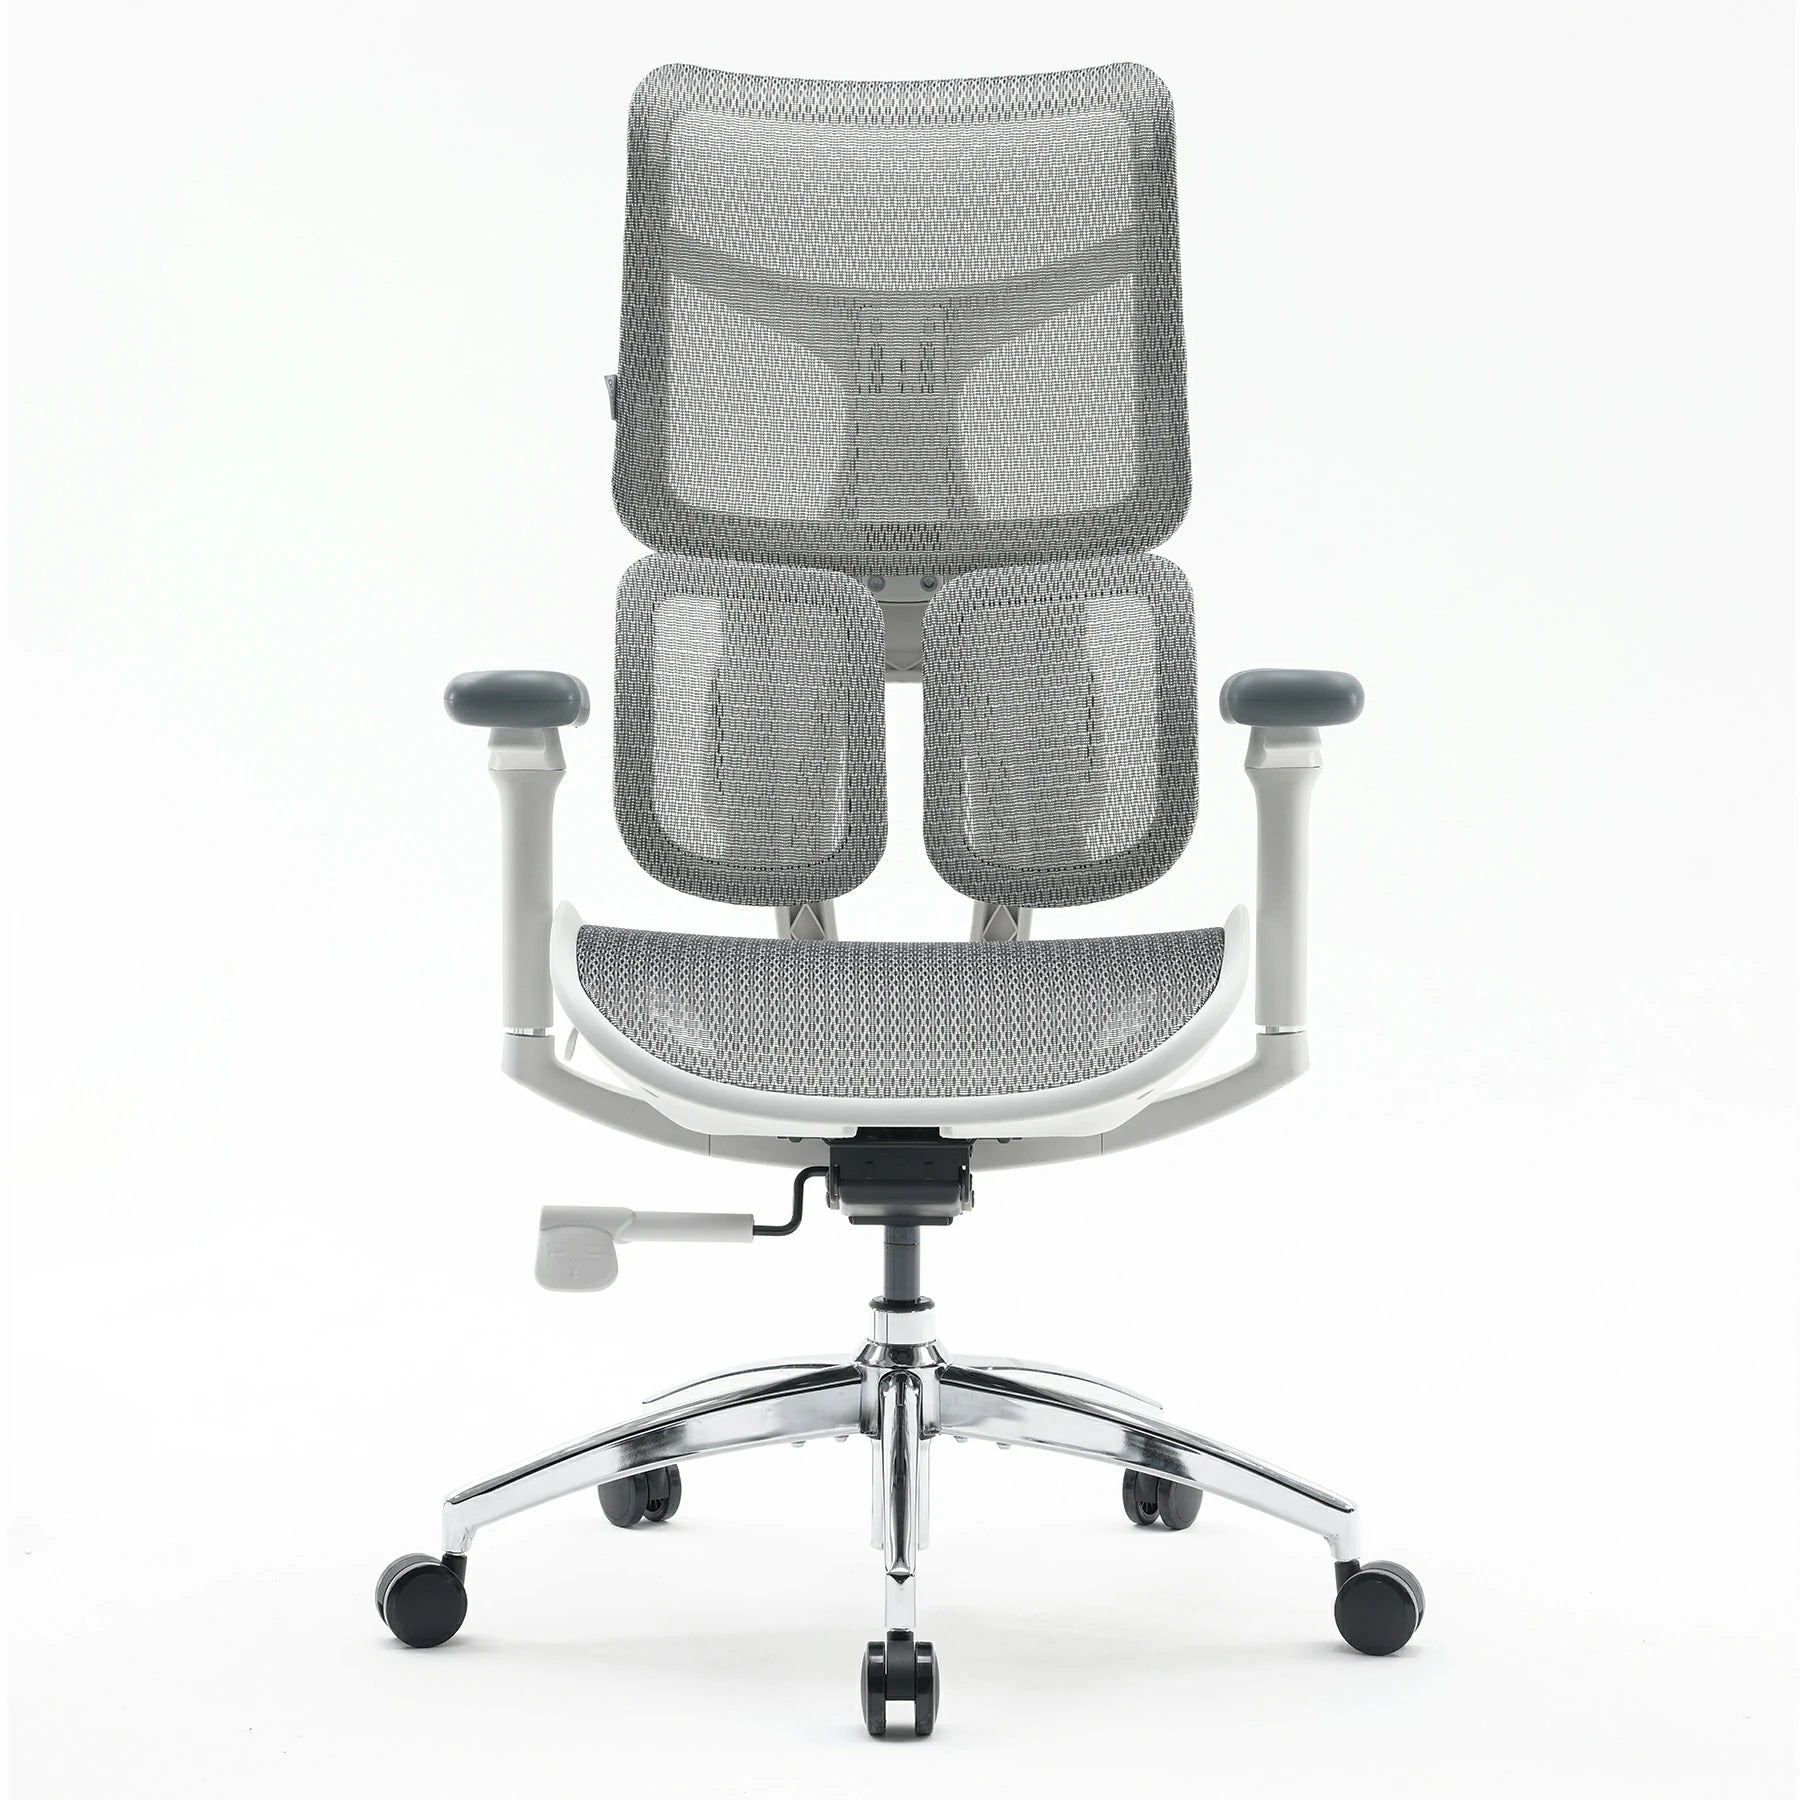 (nuova) Sihoo Doro S100 sedia ergonomica per ufficio con doppio supporto  dinamico lombare